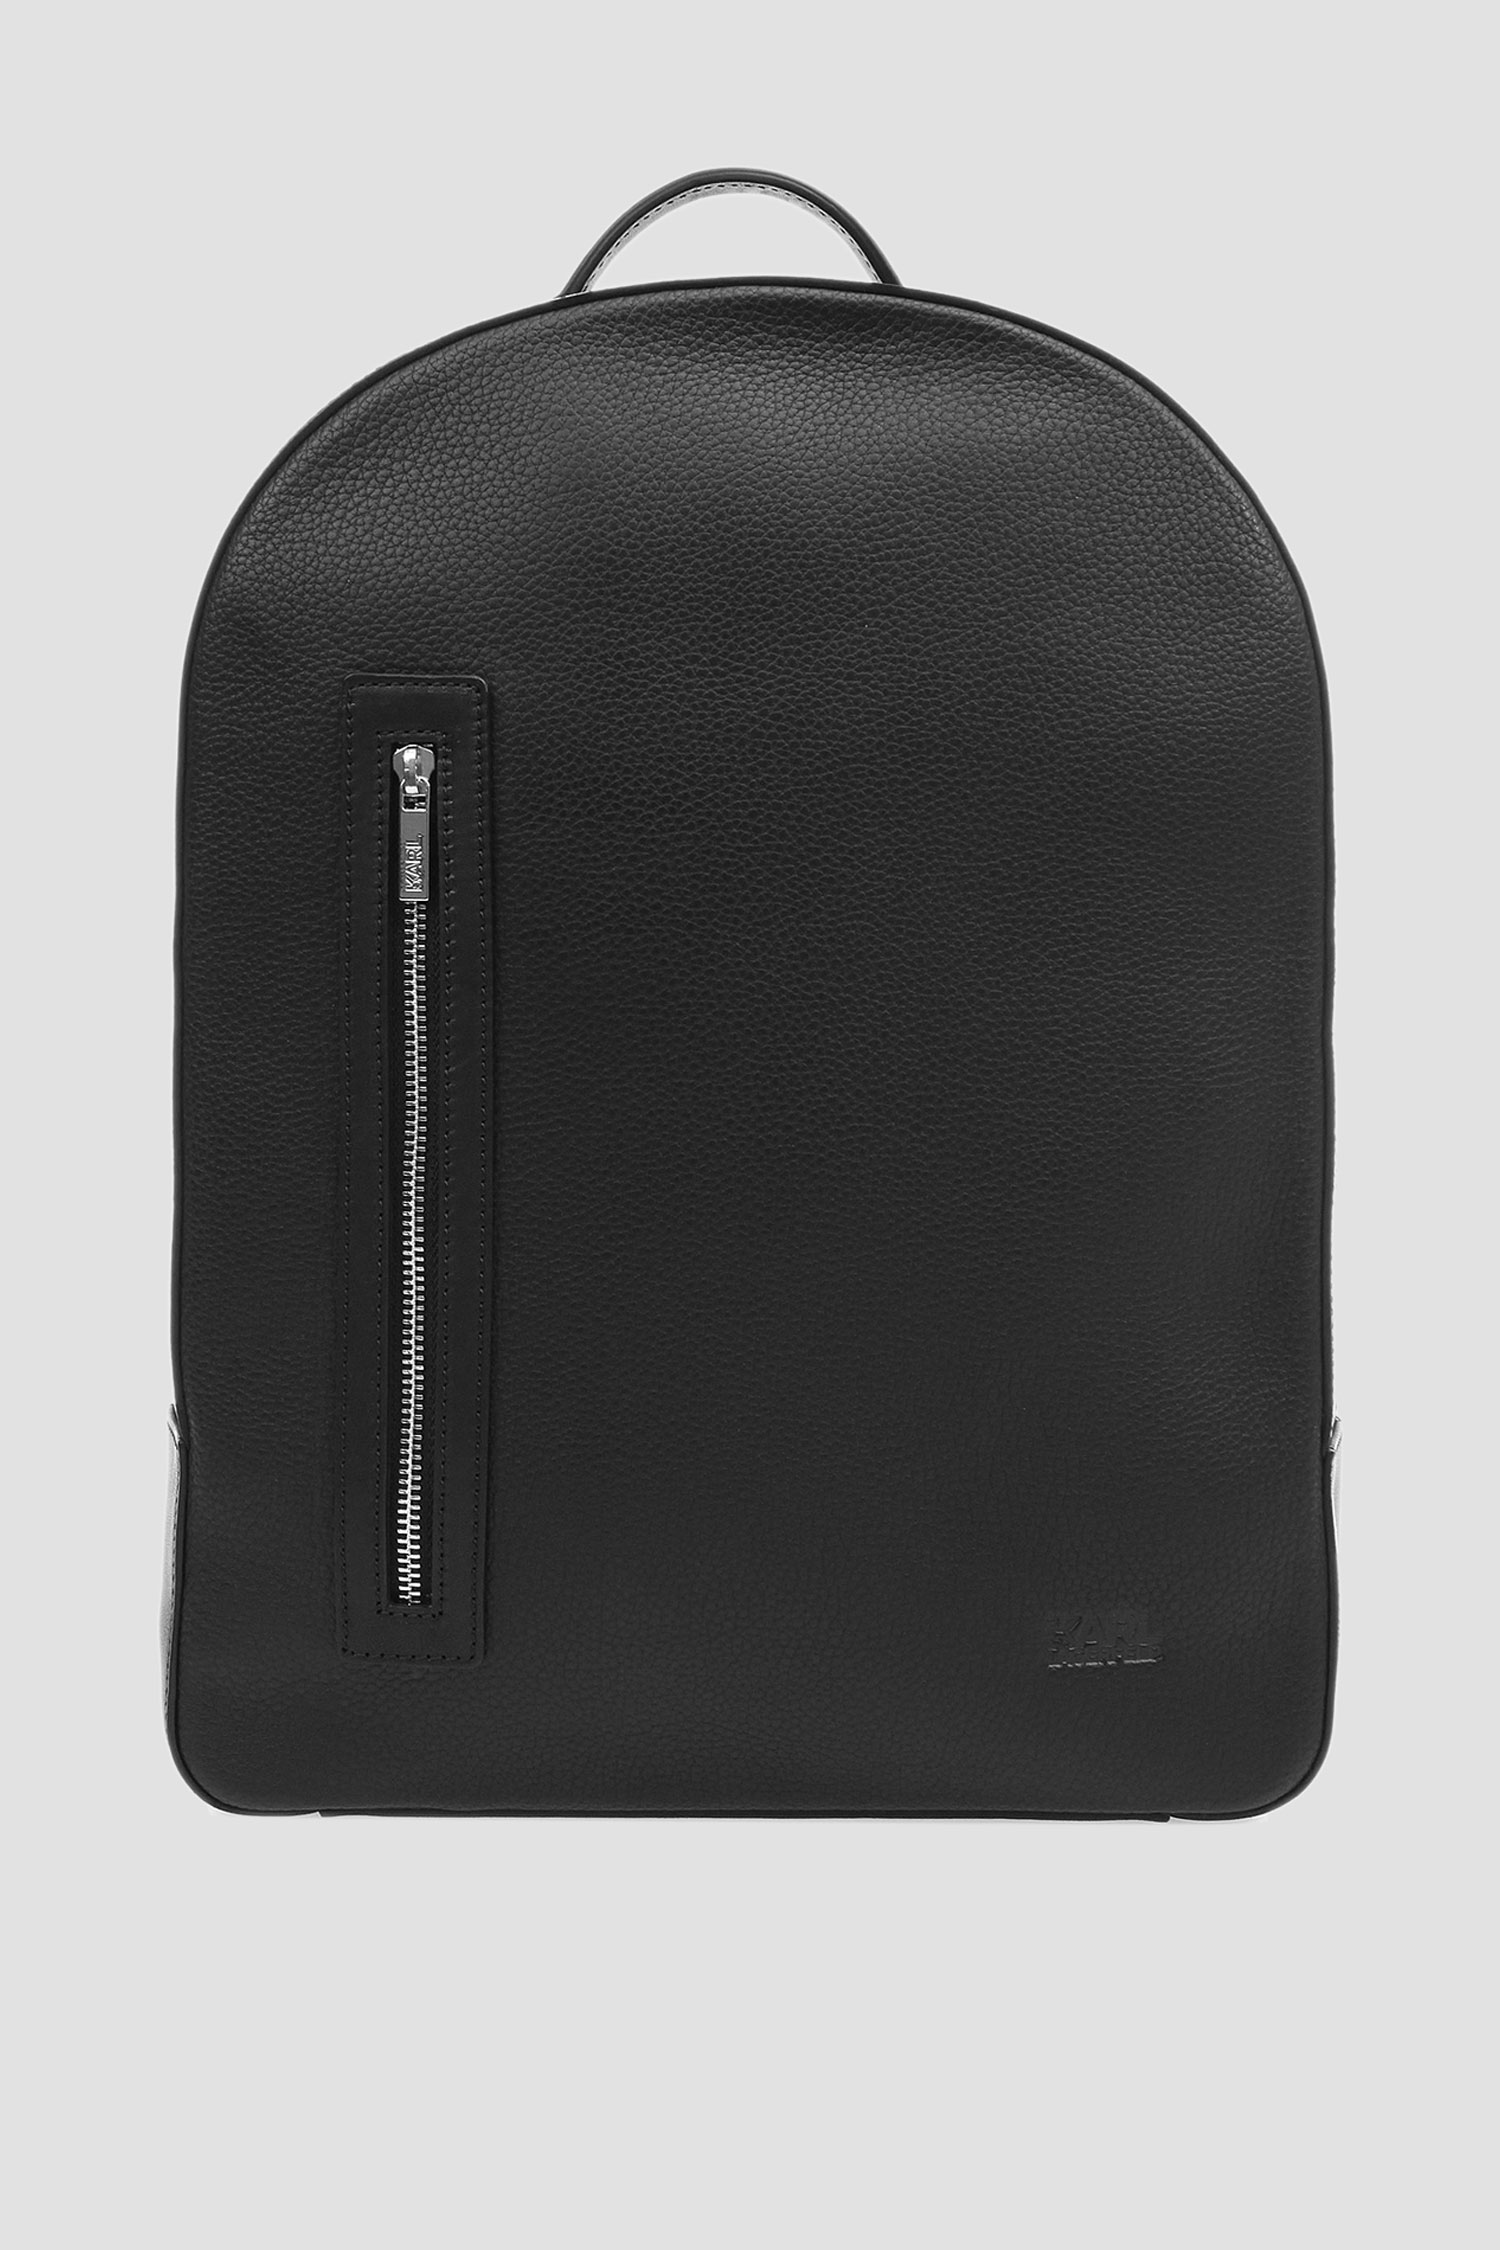 Мужской черный кожаный рюкзак Karl Lagerfeld 582451.815901;990